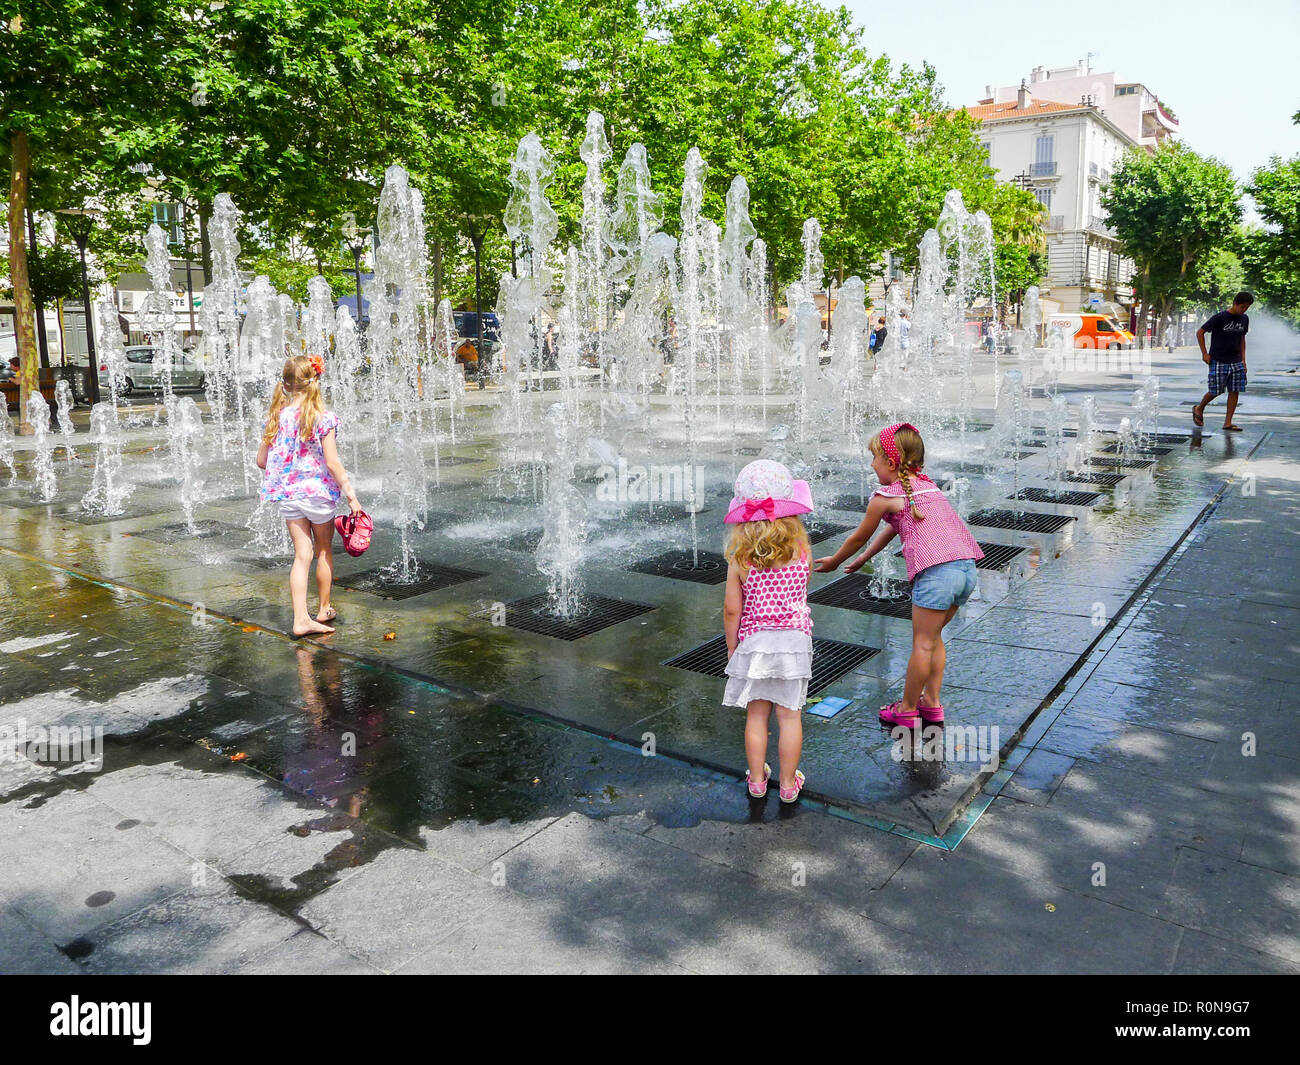 Kinder, Kinder spielen, Brunnen, Wasser spiegel Place Masséna, Nizza, Côte d'Azur, Frankreich, Hauptplatz, Französische Riviera, Urlaub, Reisen Stockfoto